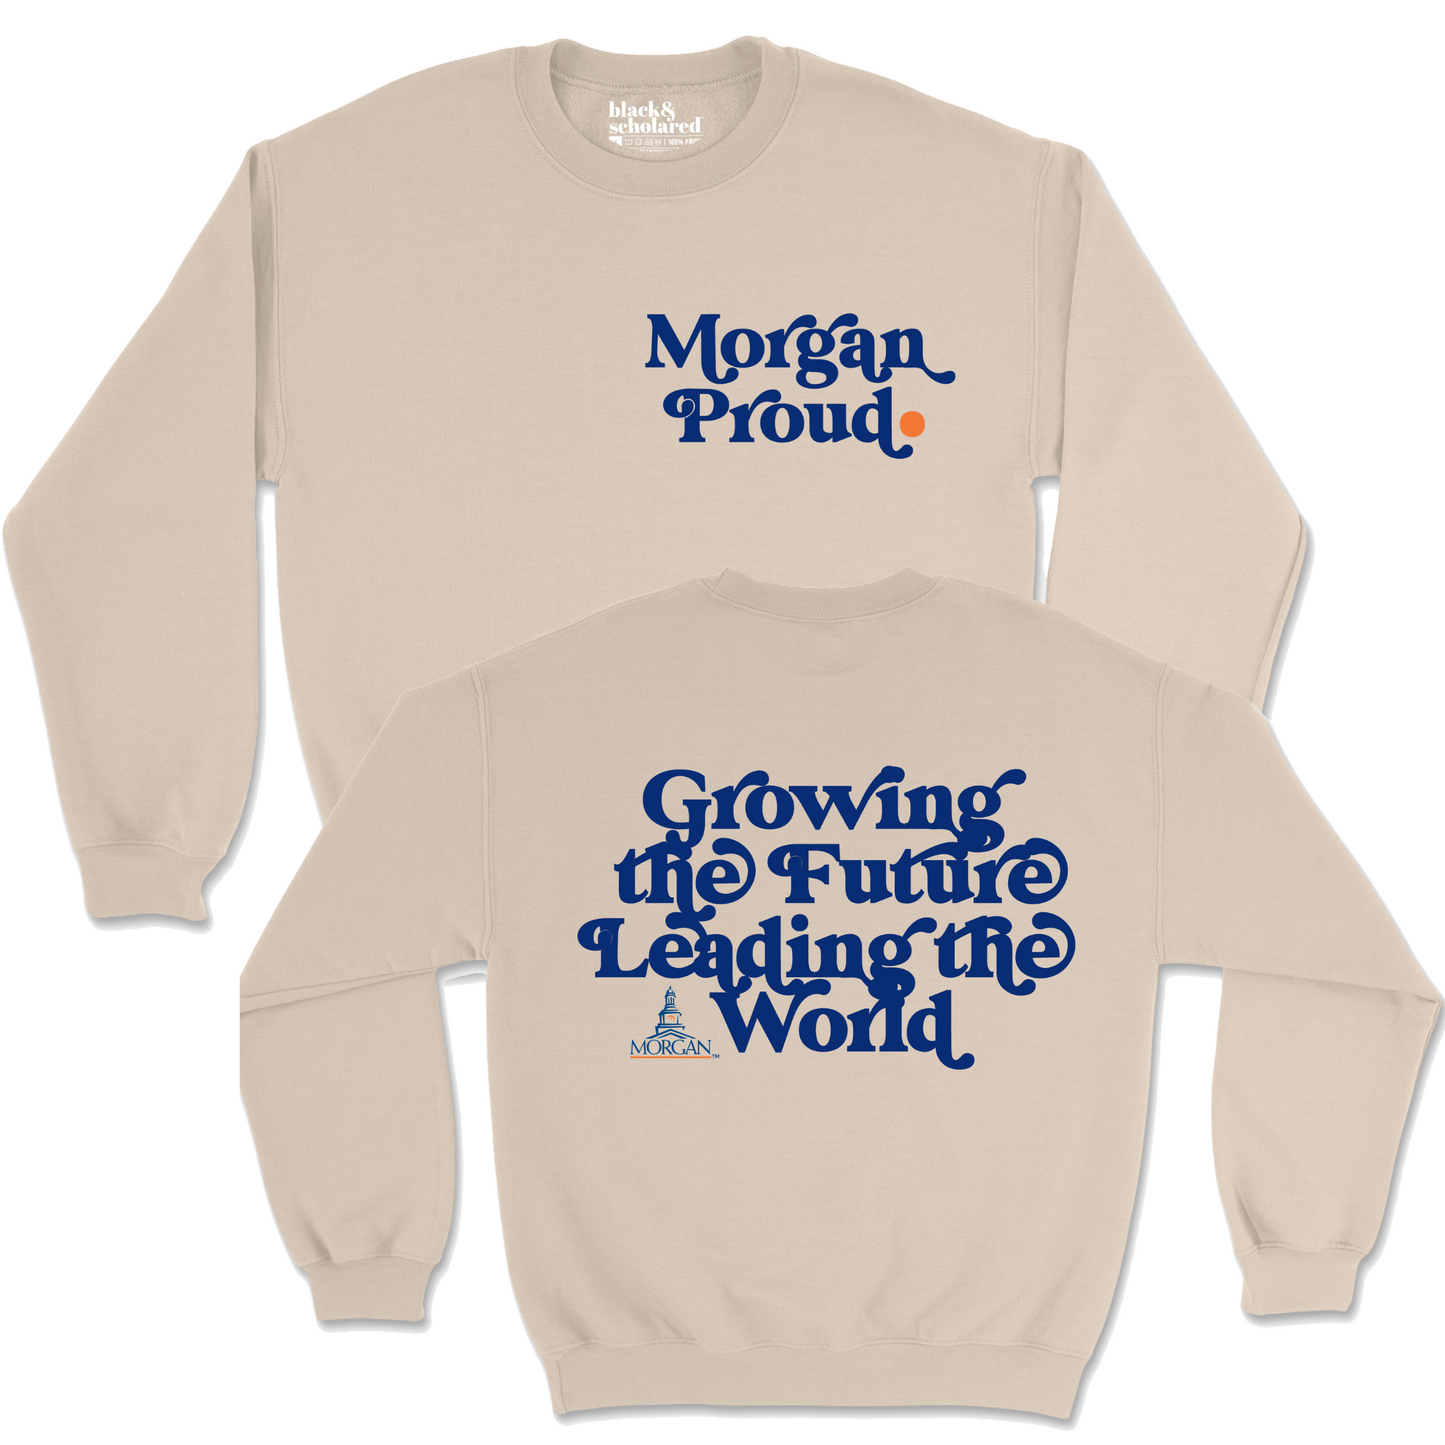 Morgan Proud Sweatshirt